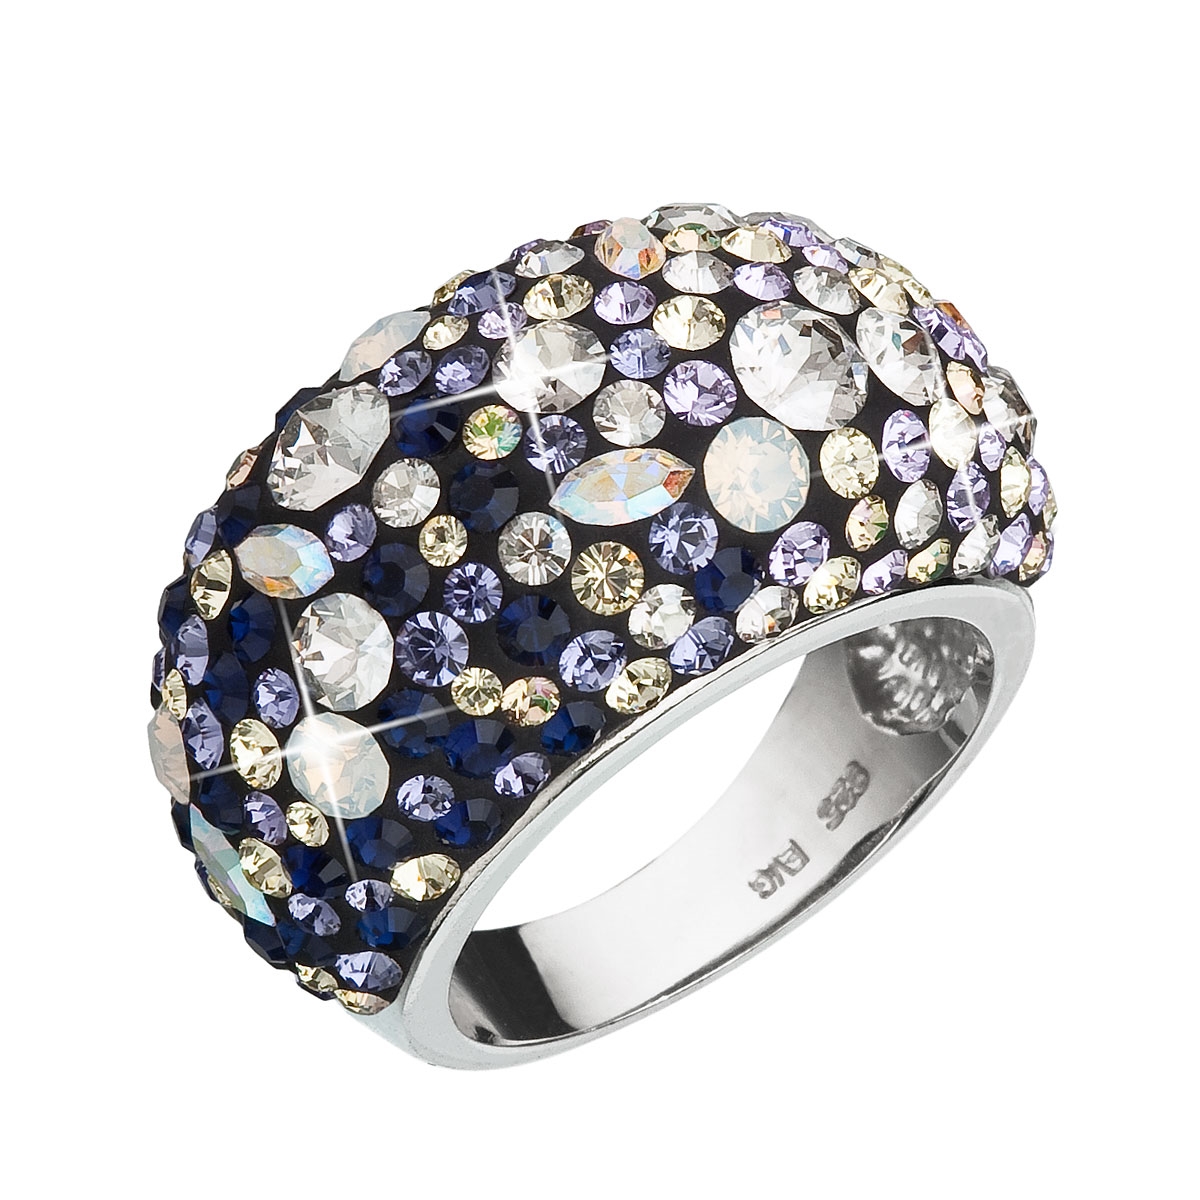 Strieborný prsteň s kryštálmi Crystals from Swarovski ®, Indigo